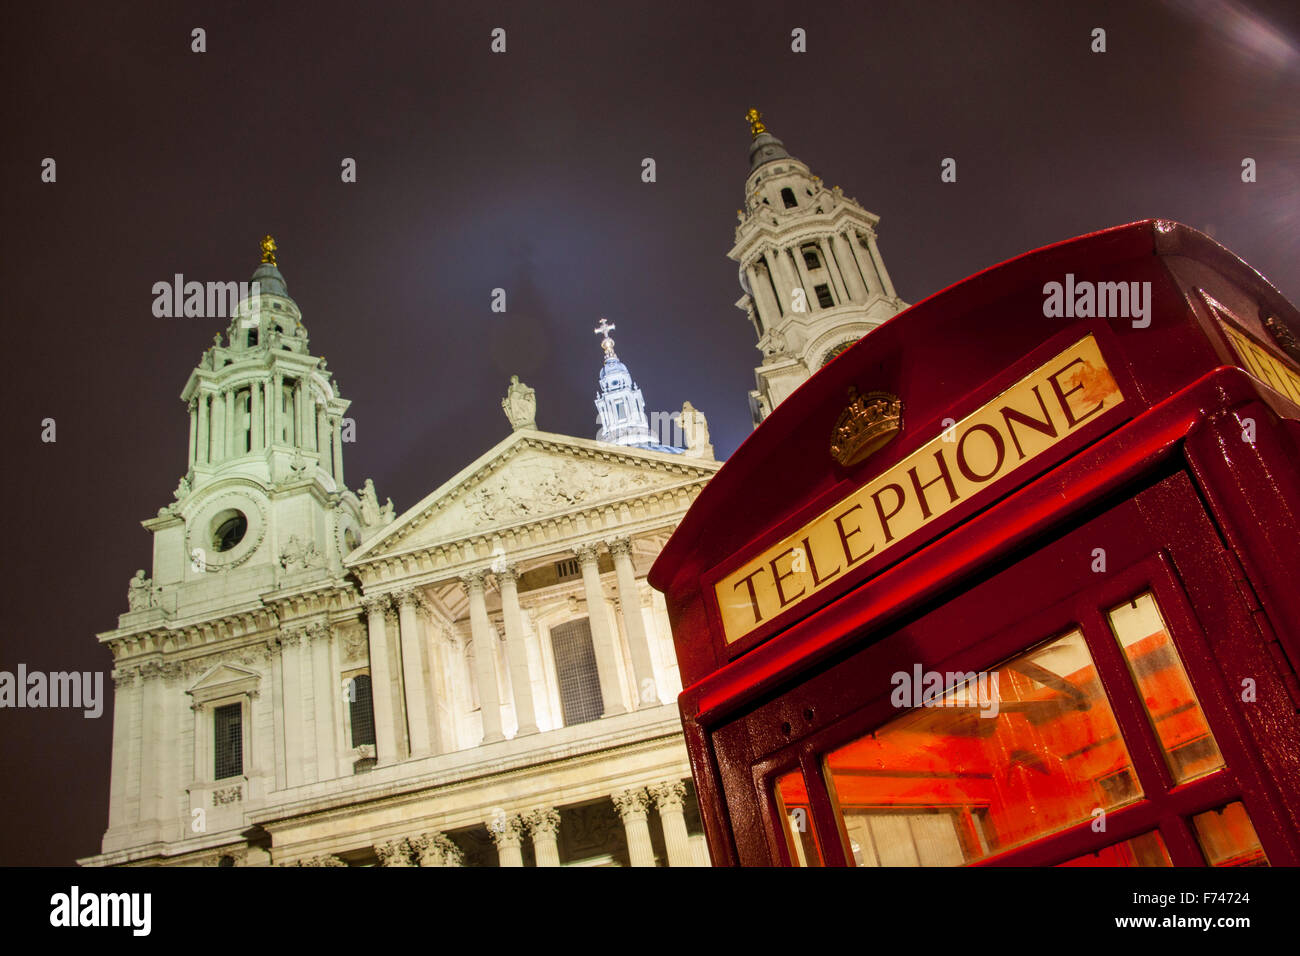 La Cathédrale St Paul et red phone box la nuit London England UK Banque D'Images